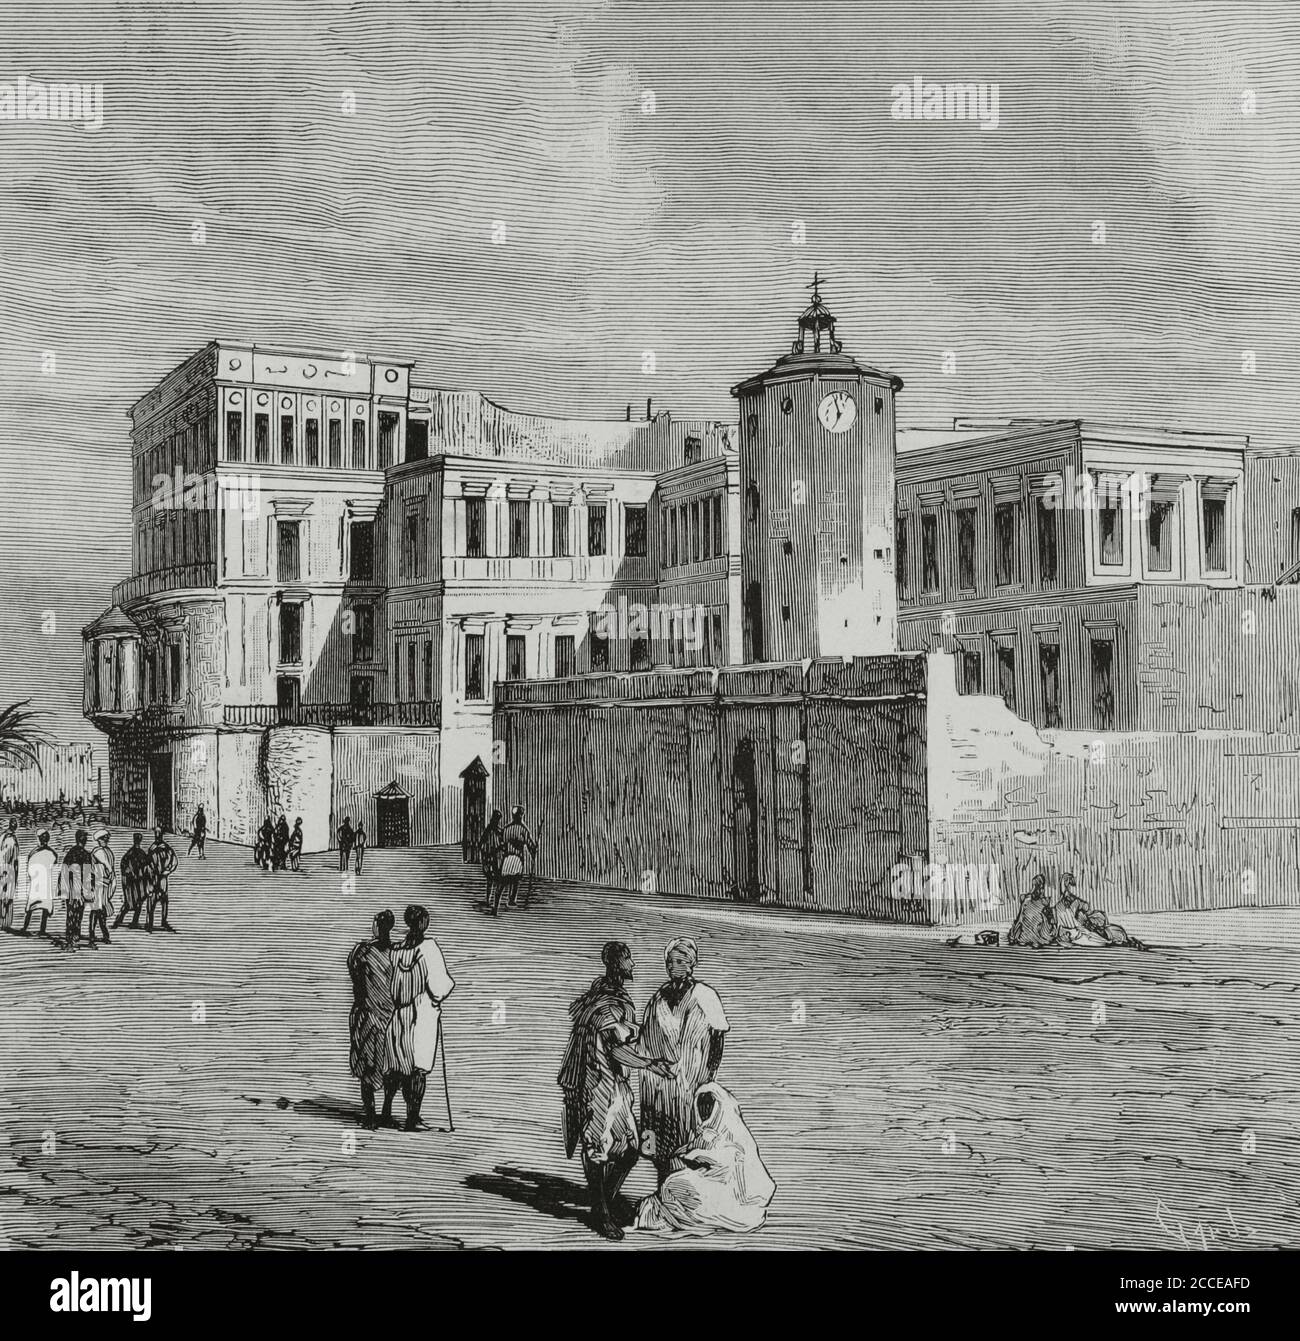 Tunisia, Tunis. Bardo Palace. Royal residence of the monarch or Bey. Engraving by Tomás Carlos Capuz (1834-1899). La Ilustracion Española y Americana, 1881. Stock Photo